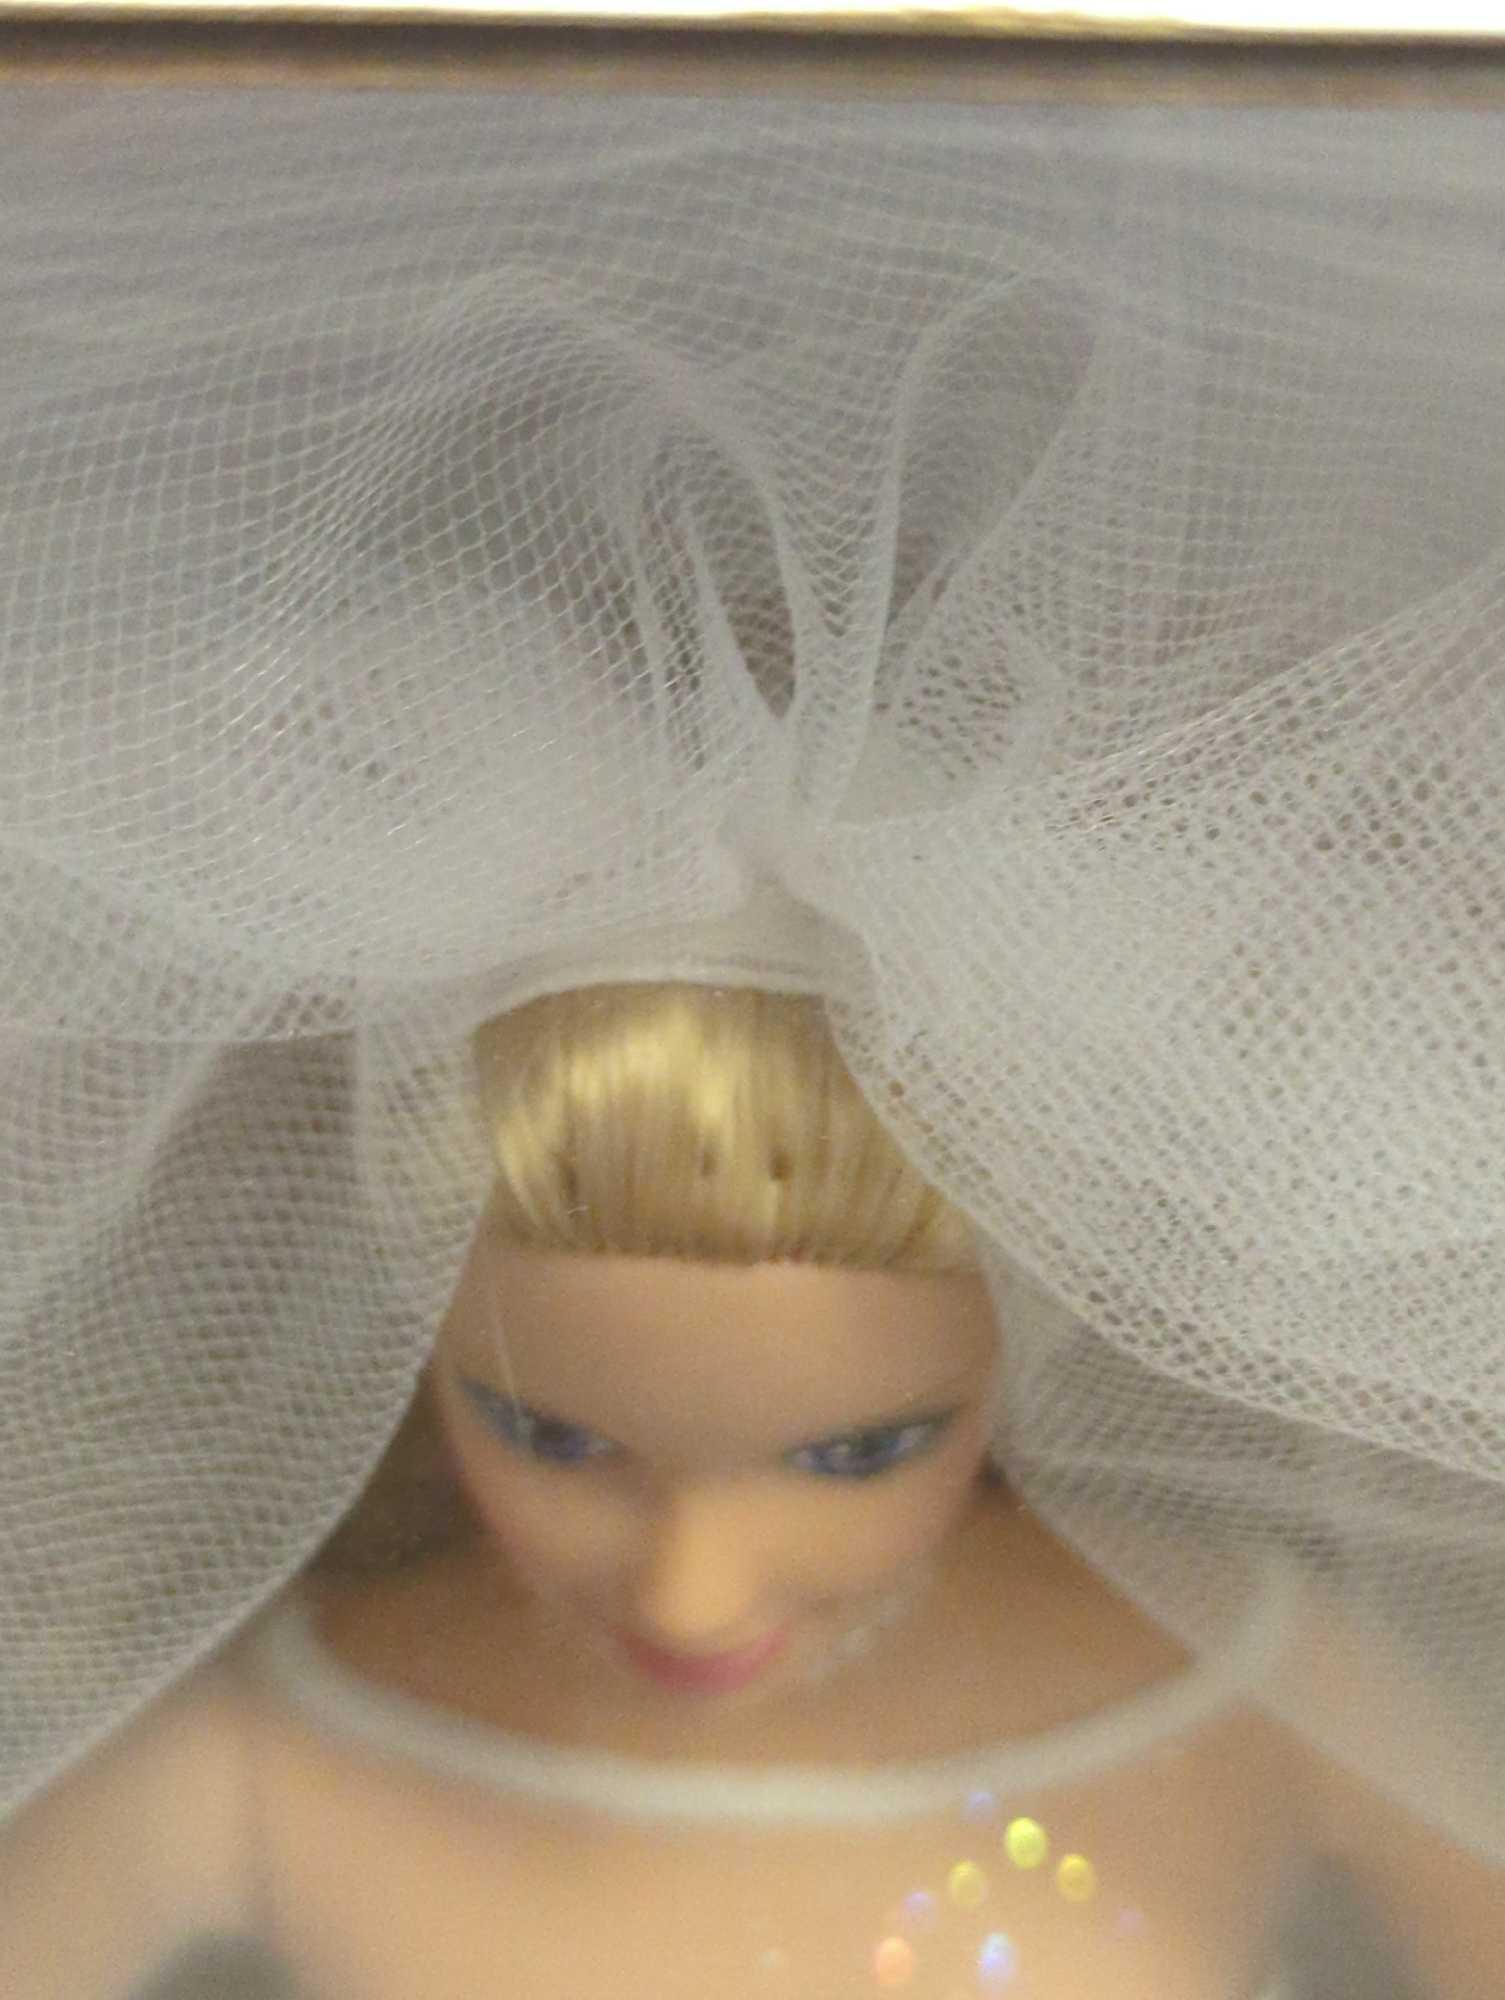 1999 Mattel Blushing Bride Barbie, New in Box, Retail Price $50, Box Measures - 14" x 8" x 2.5",